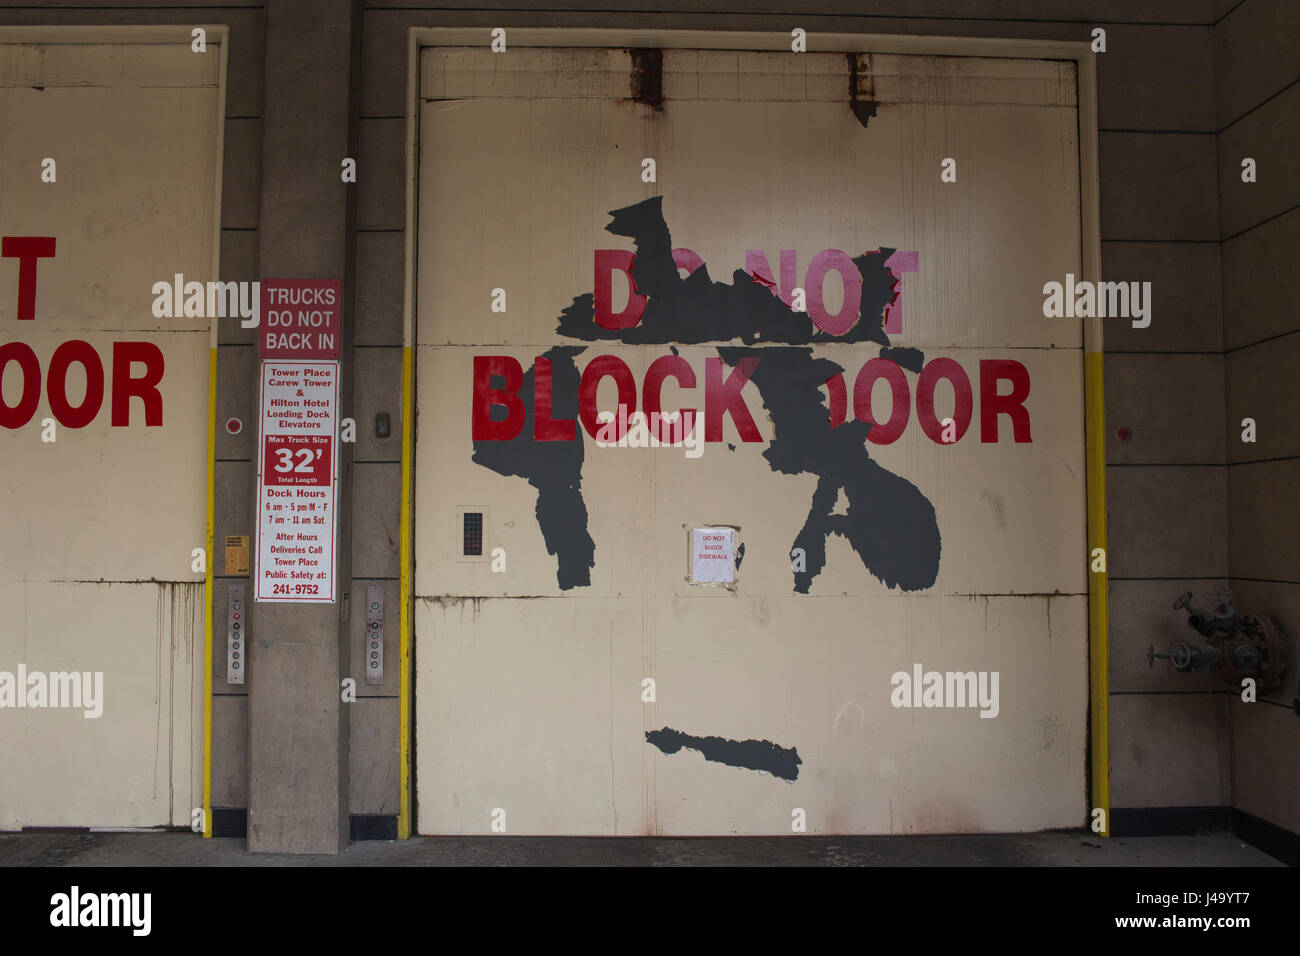 Garage door that reads do not block door in bold red letters. Stock Photo